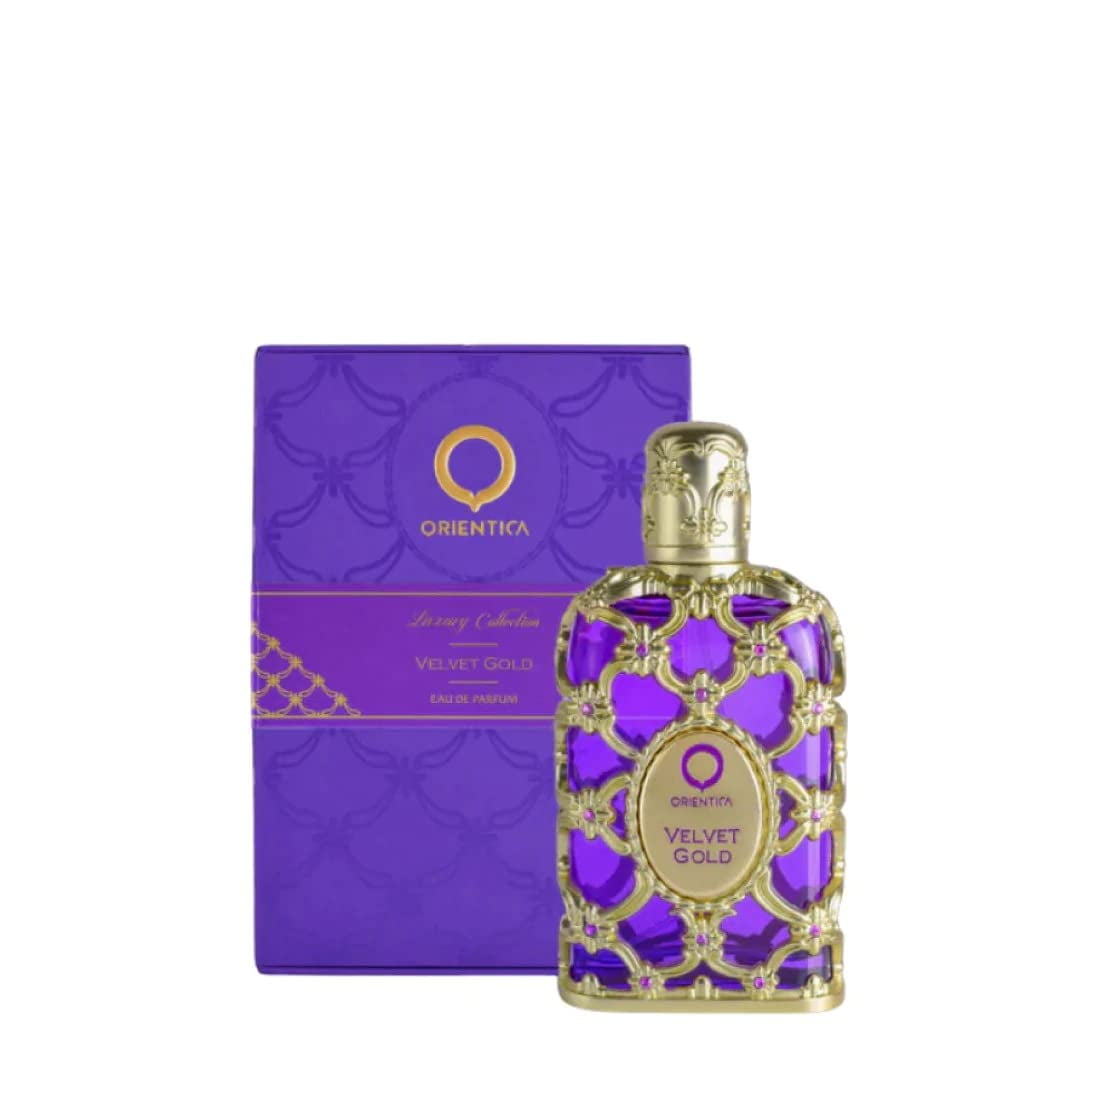 Orientica Velvet Gold Eau De Parfum 2.7oz/80ml - Walmart.com